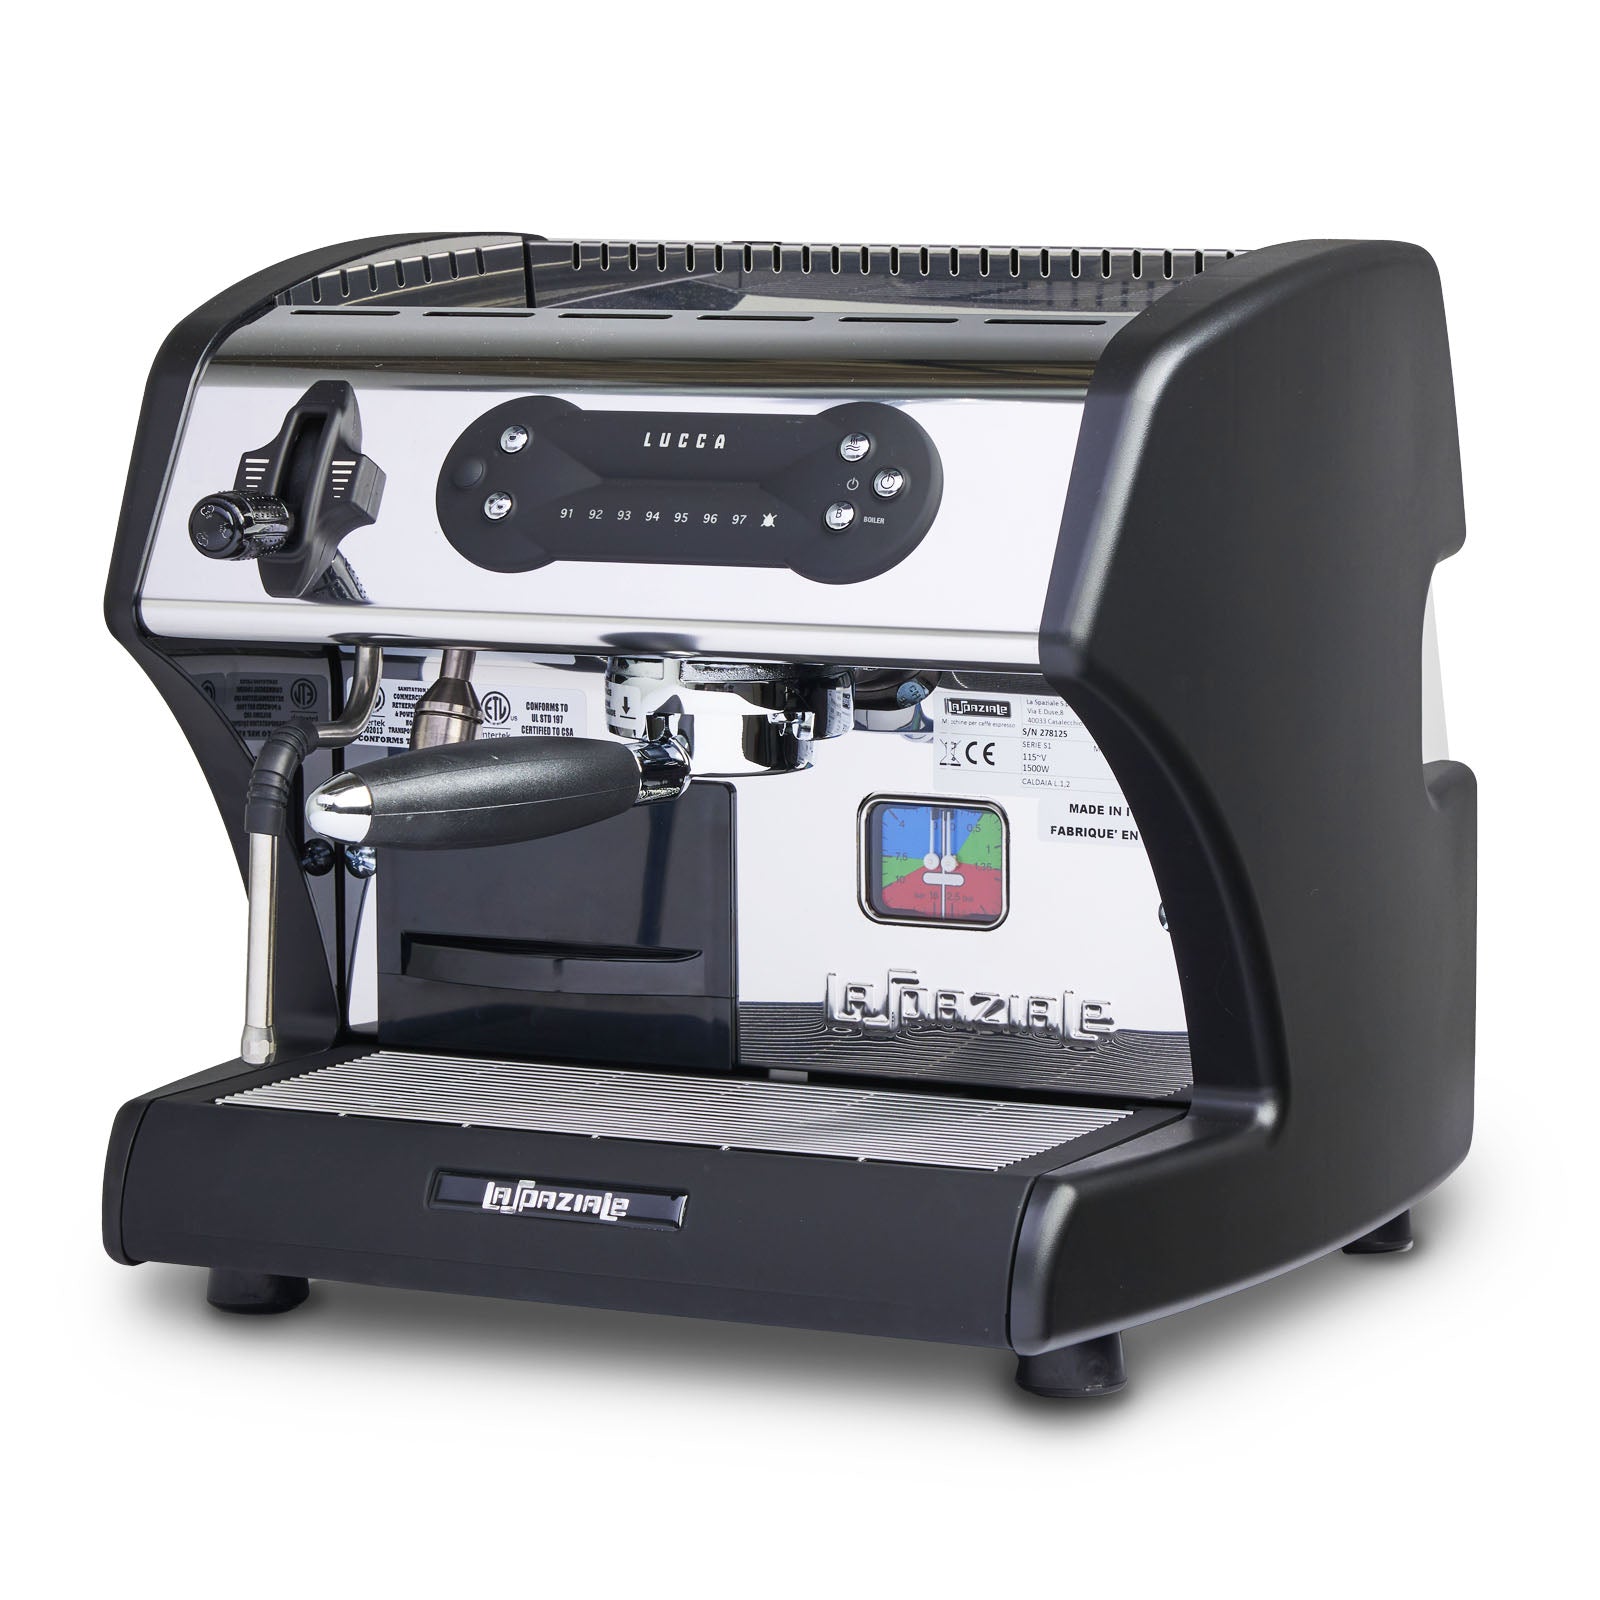 LUCCA A53 Mini Espresso Machine